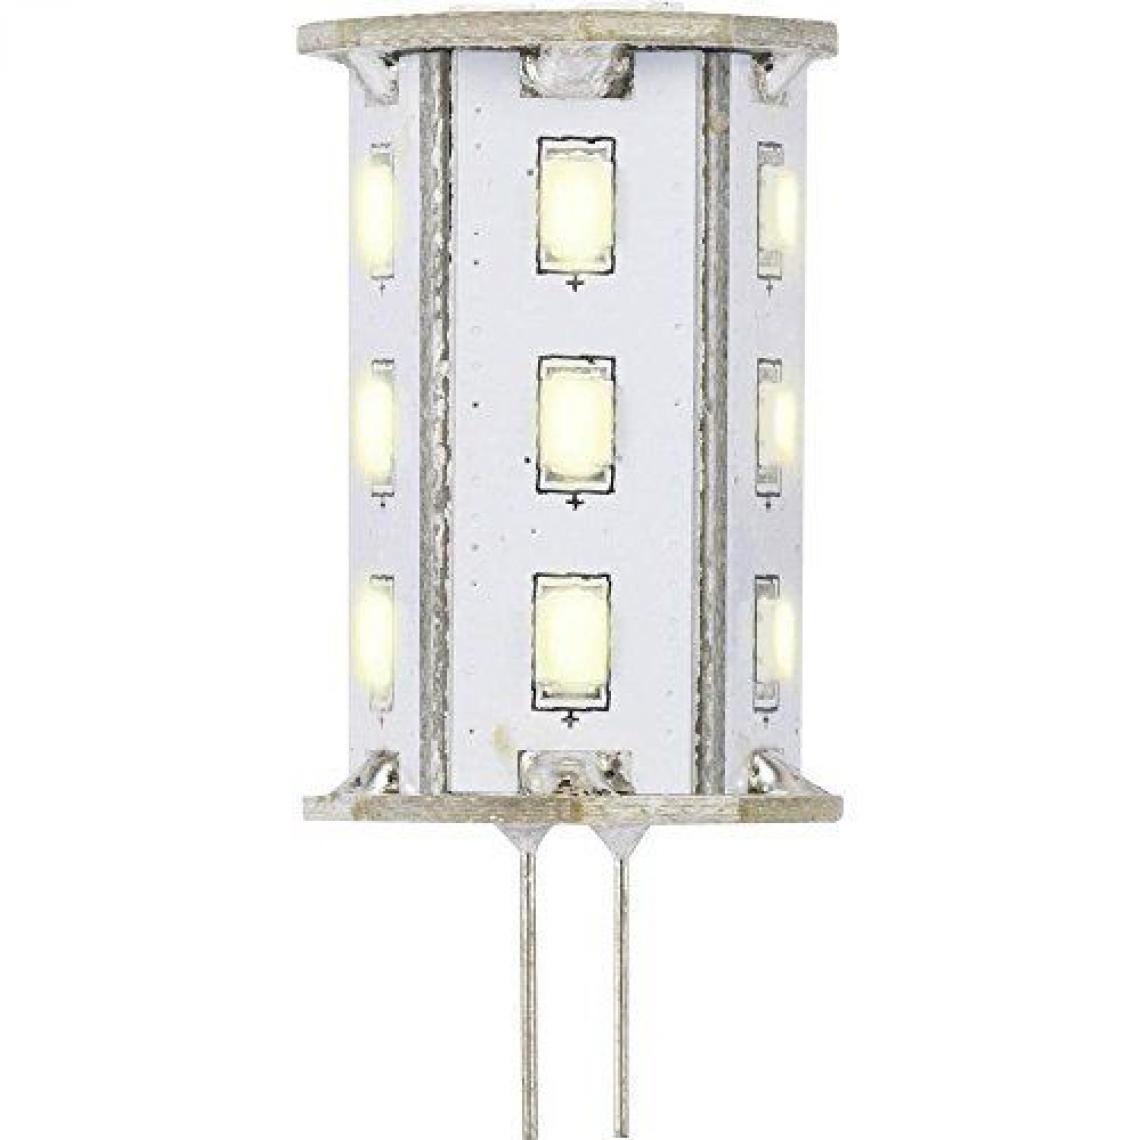 Inconnu - Ampoule LED G4 Renkforce 9283c71a à broches 2.4 W = 20 W blanc chaud (Ø x L) 22 mm x 46.2 mm EEC: classe A 1 pc(s) - Ampoules LED